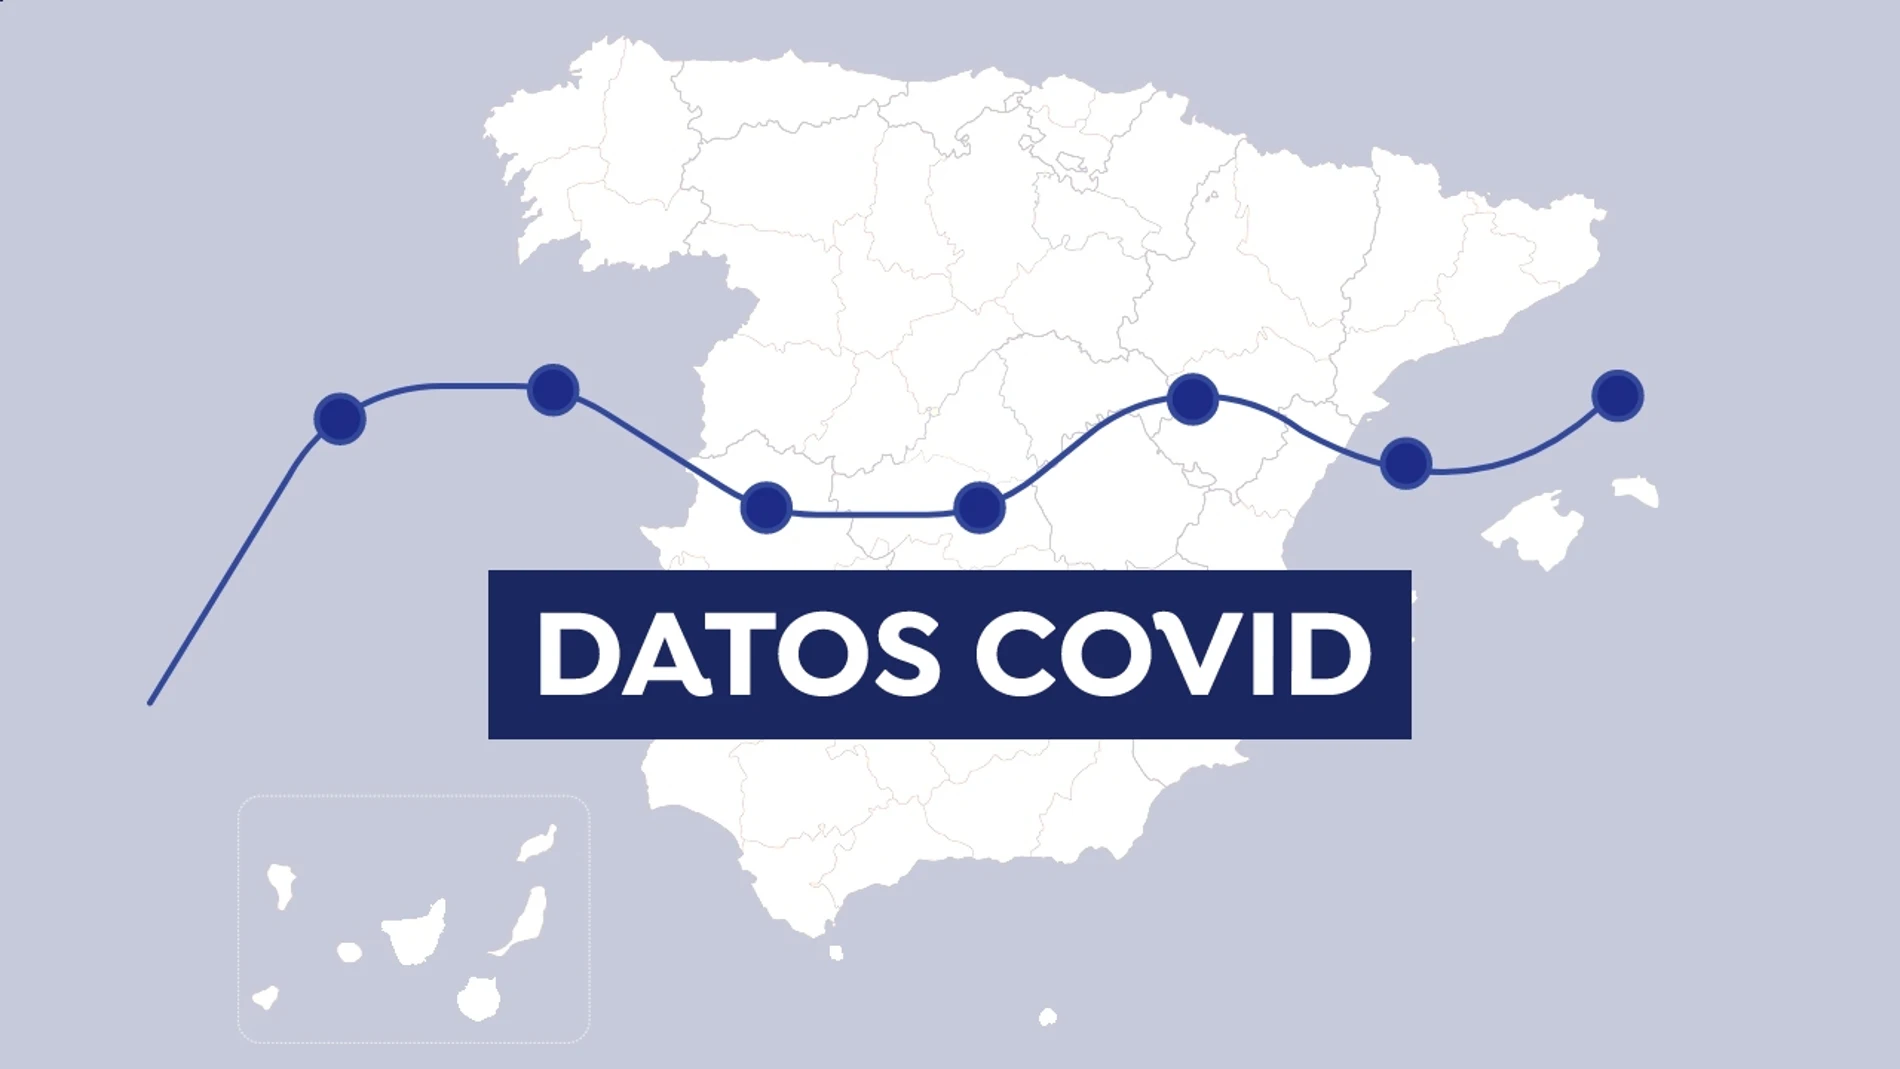 Mapa COVID-19: Datos de contagios, nuevos casos y fallecidos por coronavirus en España y el mundo hoy